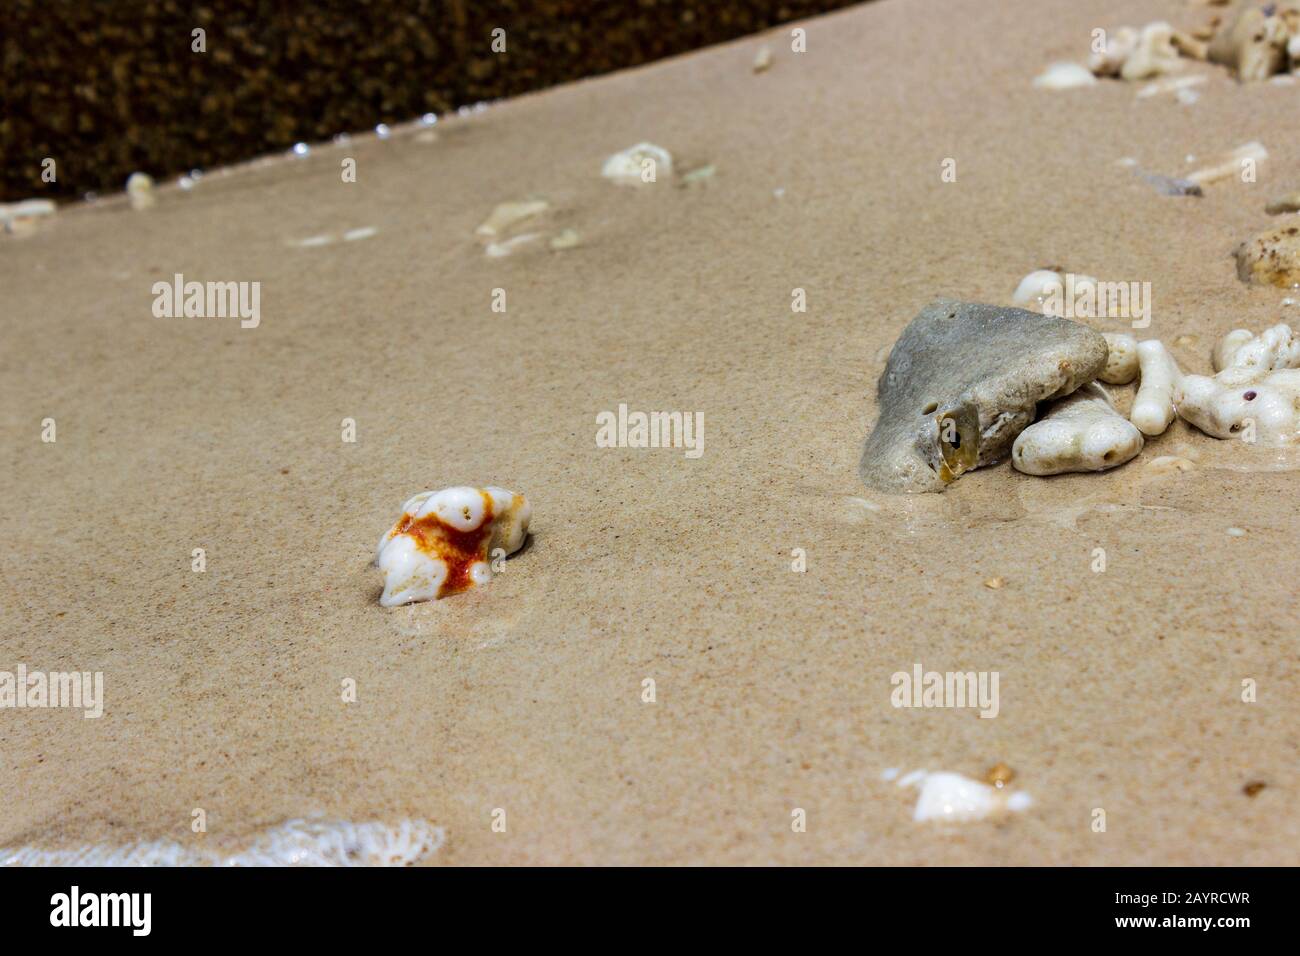 Rochers, coquillages, morceaux de corail et vagues près de Nudey Beach sur l'île Fitzroy dans la mer de corail au large de la côte tropicale du Queensland Australie. Banque D'Images